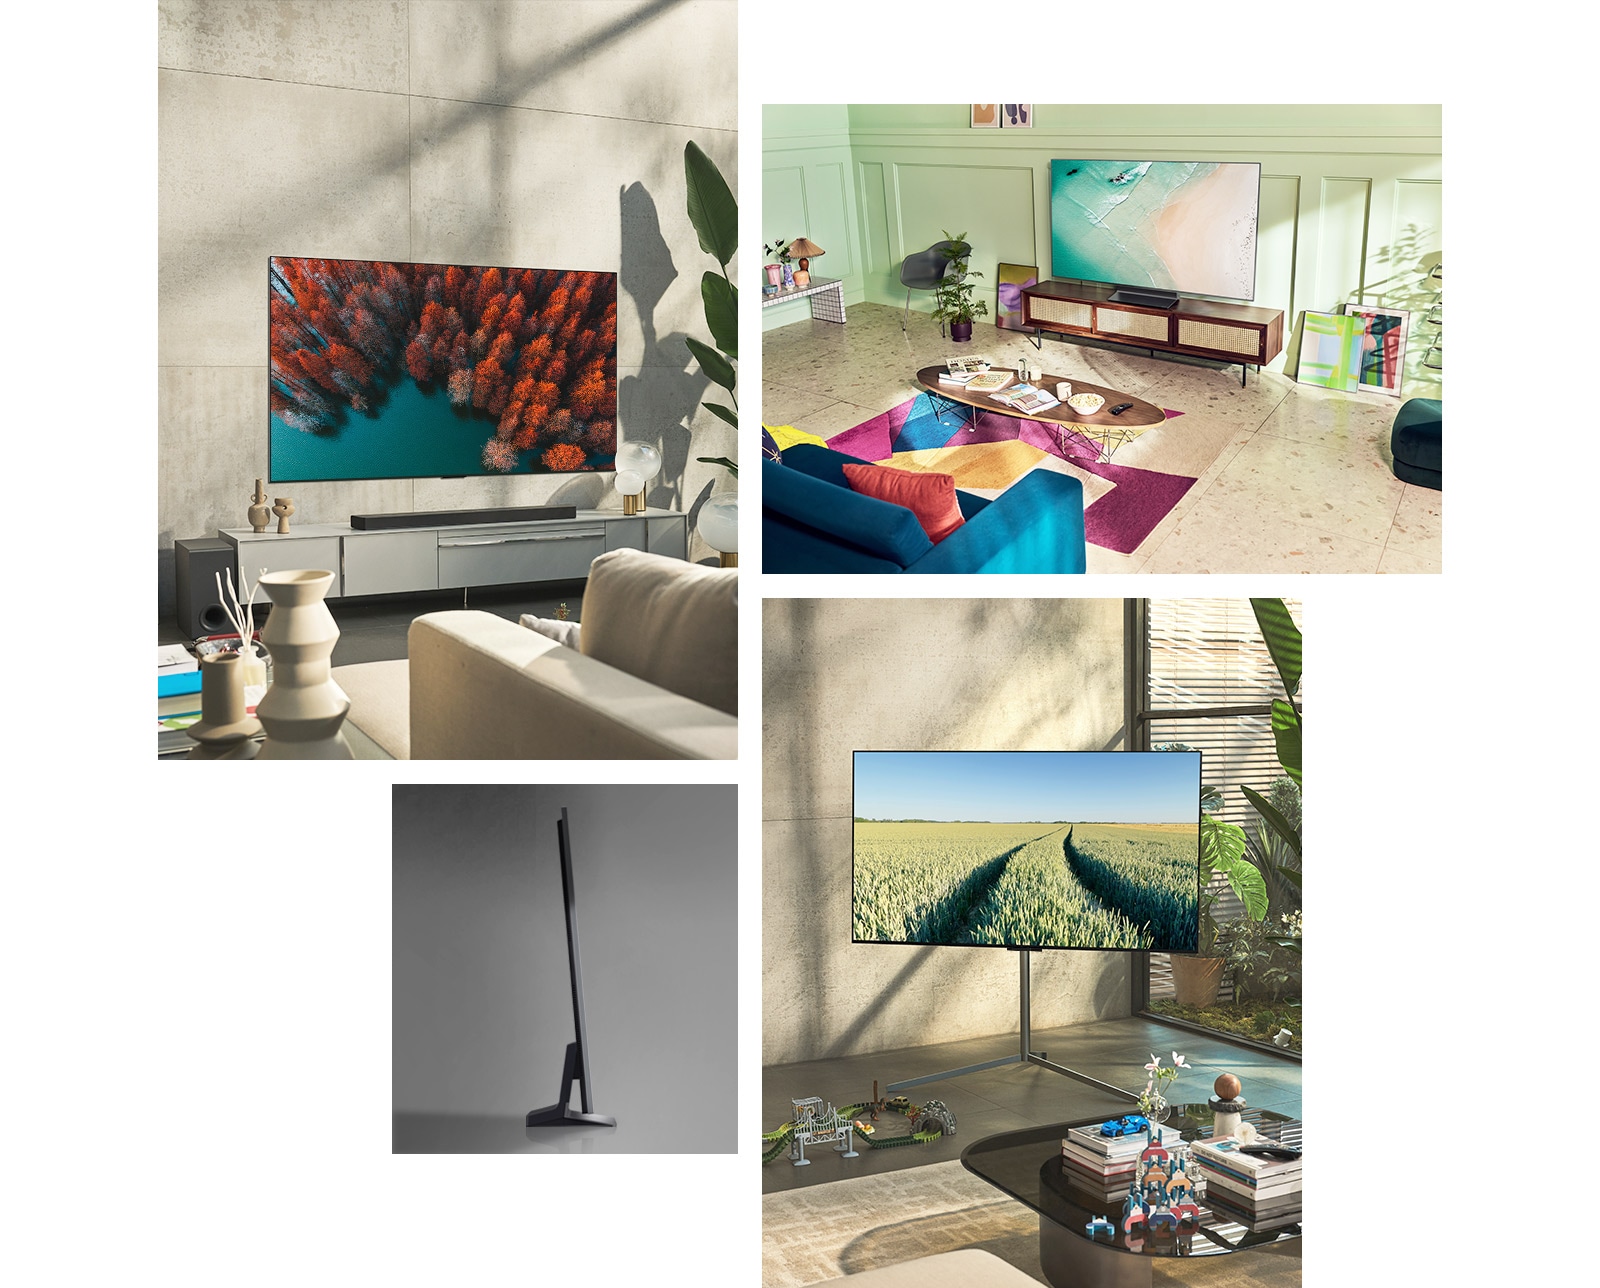 LG OLED G2 je obešen na steno dnevne sobe v nevtralnih barvah z rastlinami in rustikalnimi okraski.  LG OLED G2 stoji na televizijski polici v sobi mint barve s pisanimi umetninami in pohištvom.  LG OLED G2 s stojalom Gallery stoji v kotu sobe v družinskem domu.  Stranski pogled na izjemno tanek LG OLED G2.